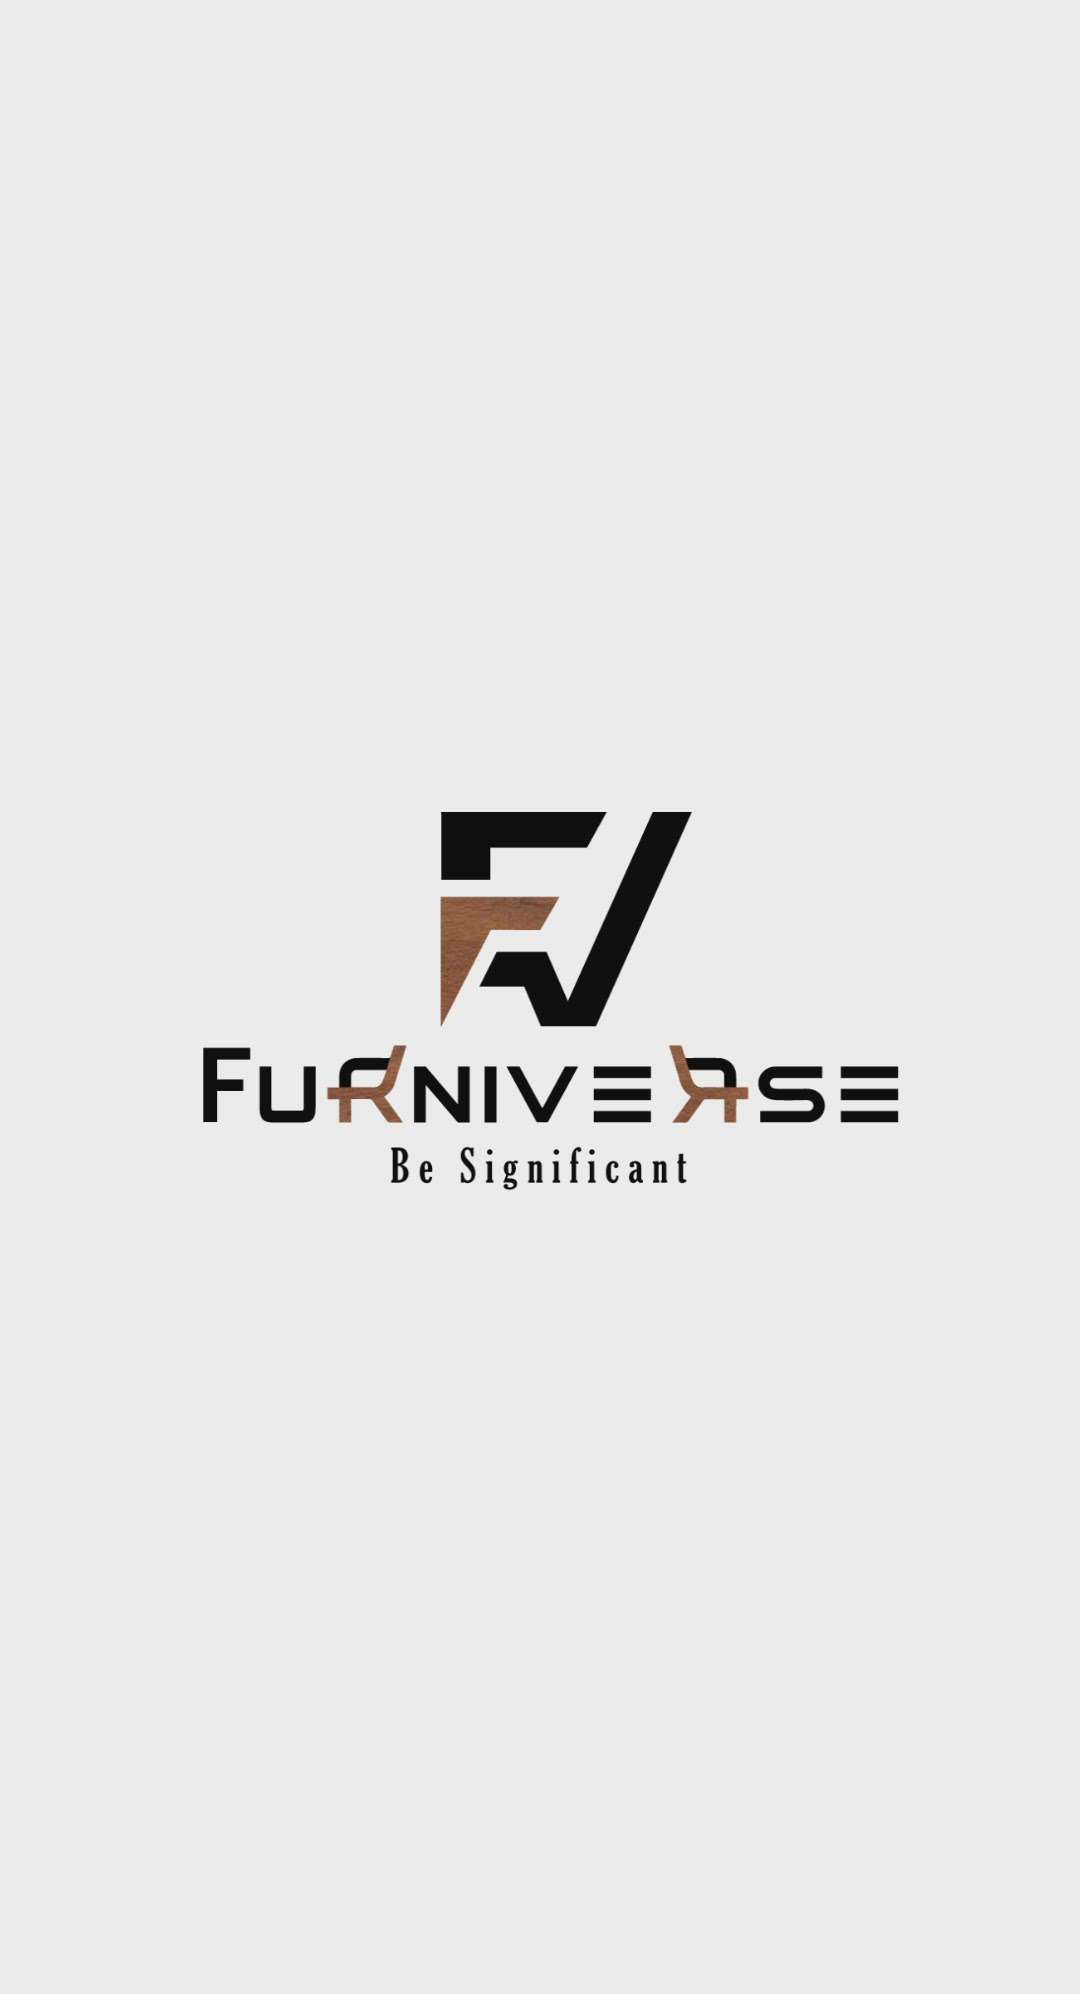 Furniverse palakkad  #furnitures  #furniturelastforlife  #furniturework  #furnituremanufacturer  #furniturestore  #furnitureshowroom  #onlineshopping  #Palakkad